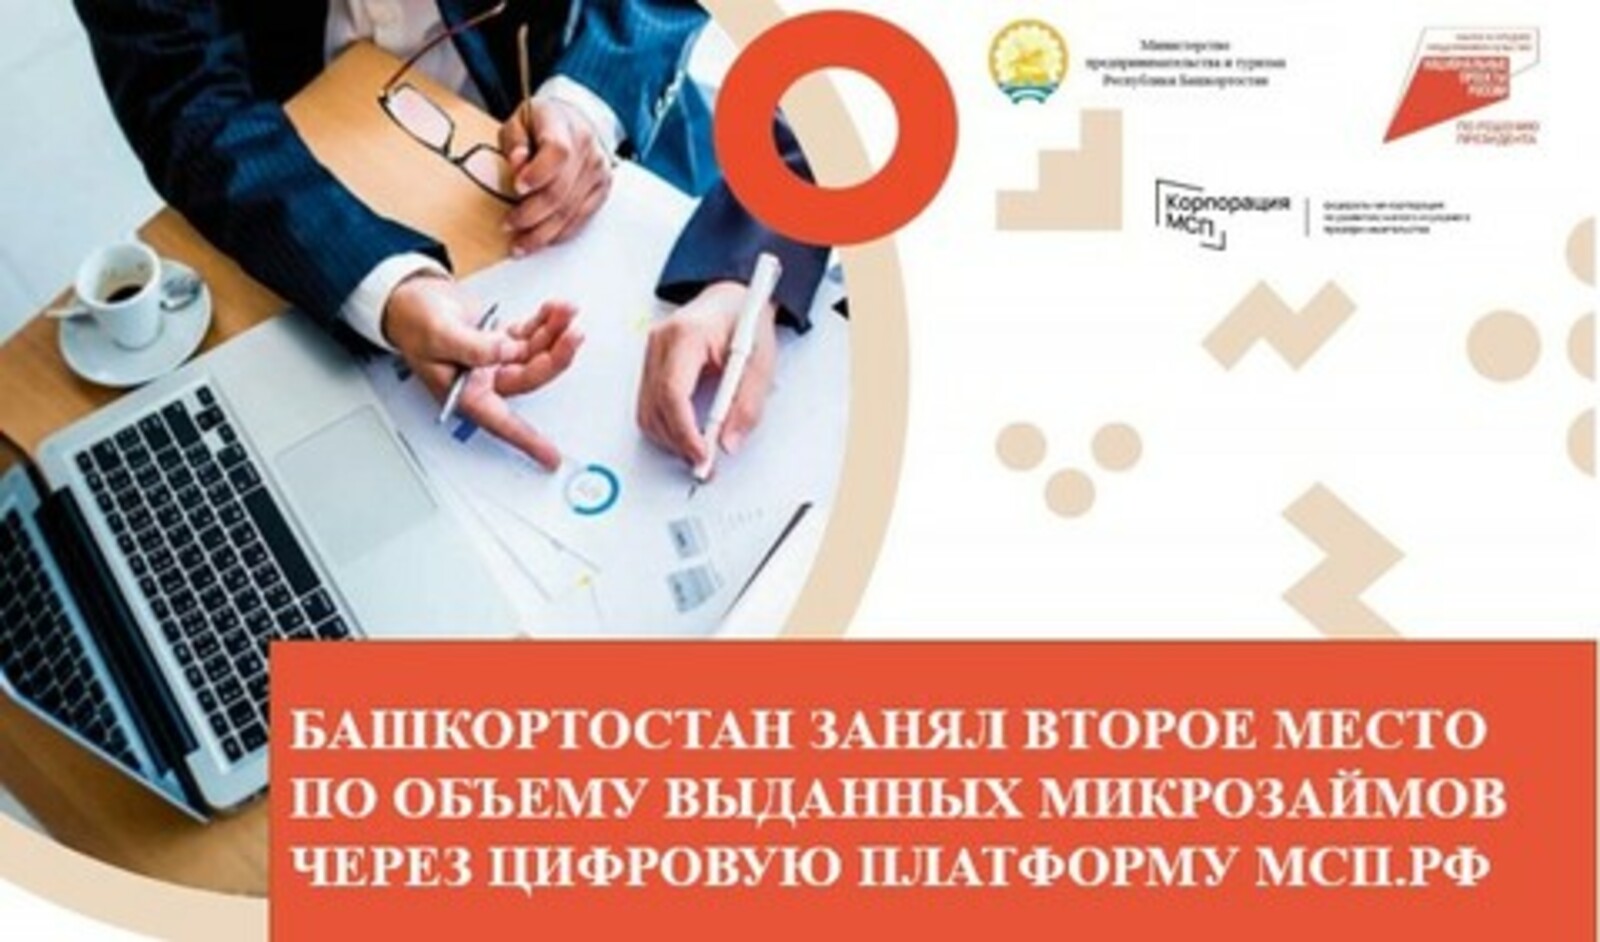 Башкортостан занял второе место в России по объему выданных микрозаймов через Цифровую платформу МСП.РФ